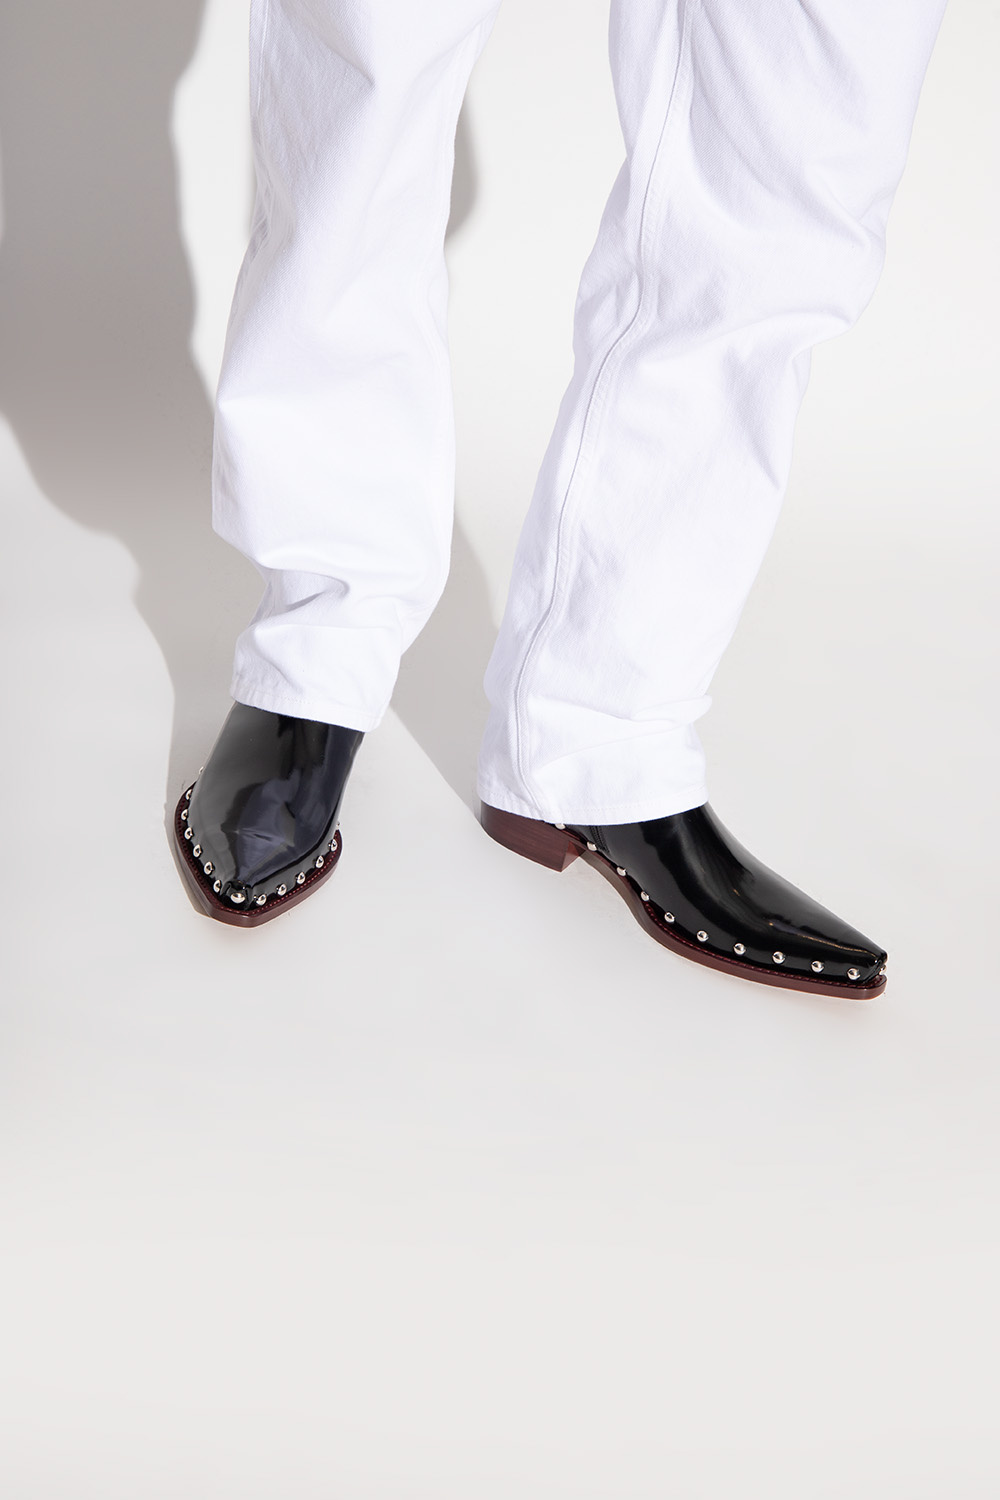 bottega amp Veneta ‘Ripley’ heeled ankle boots